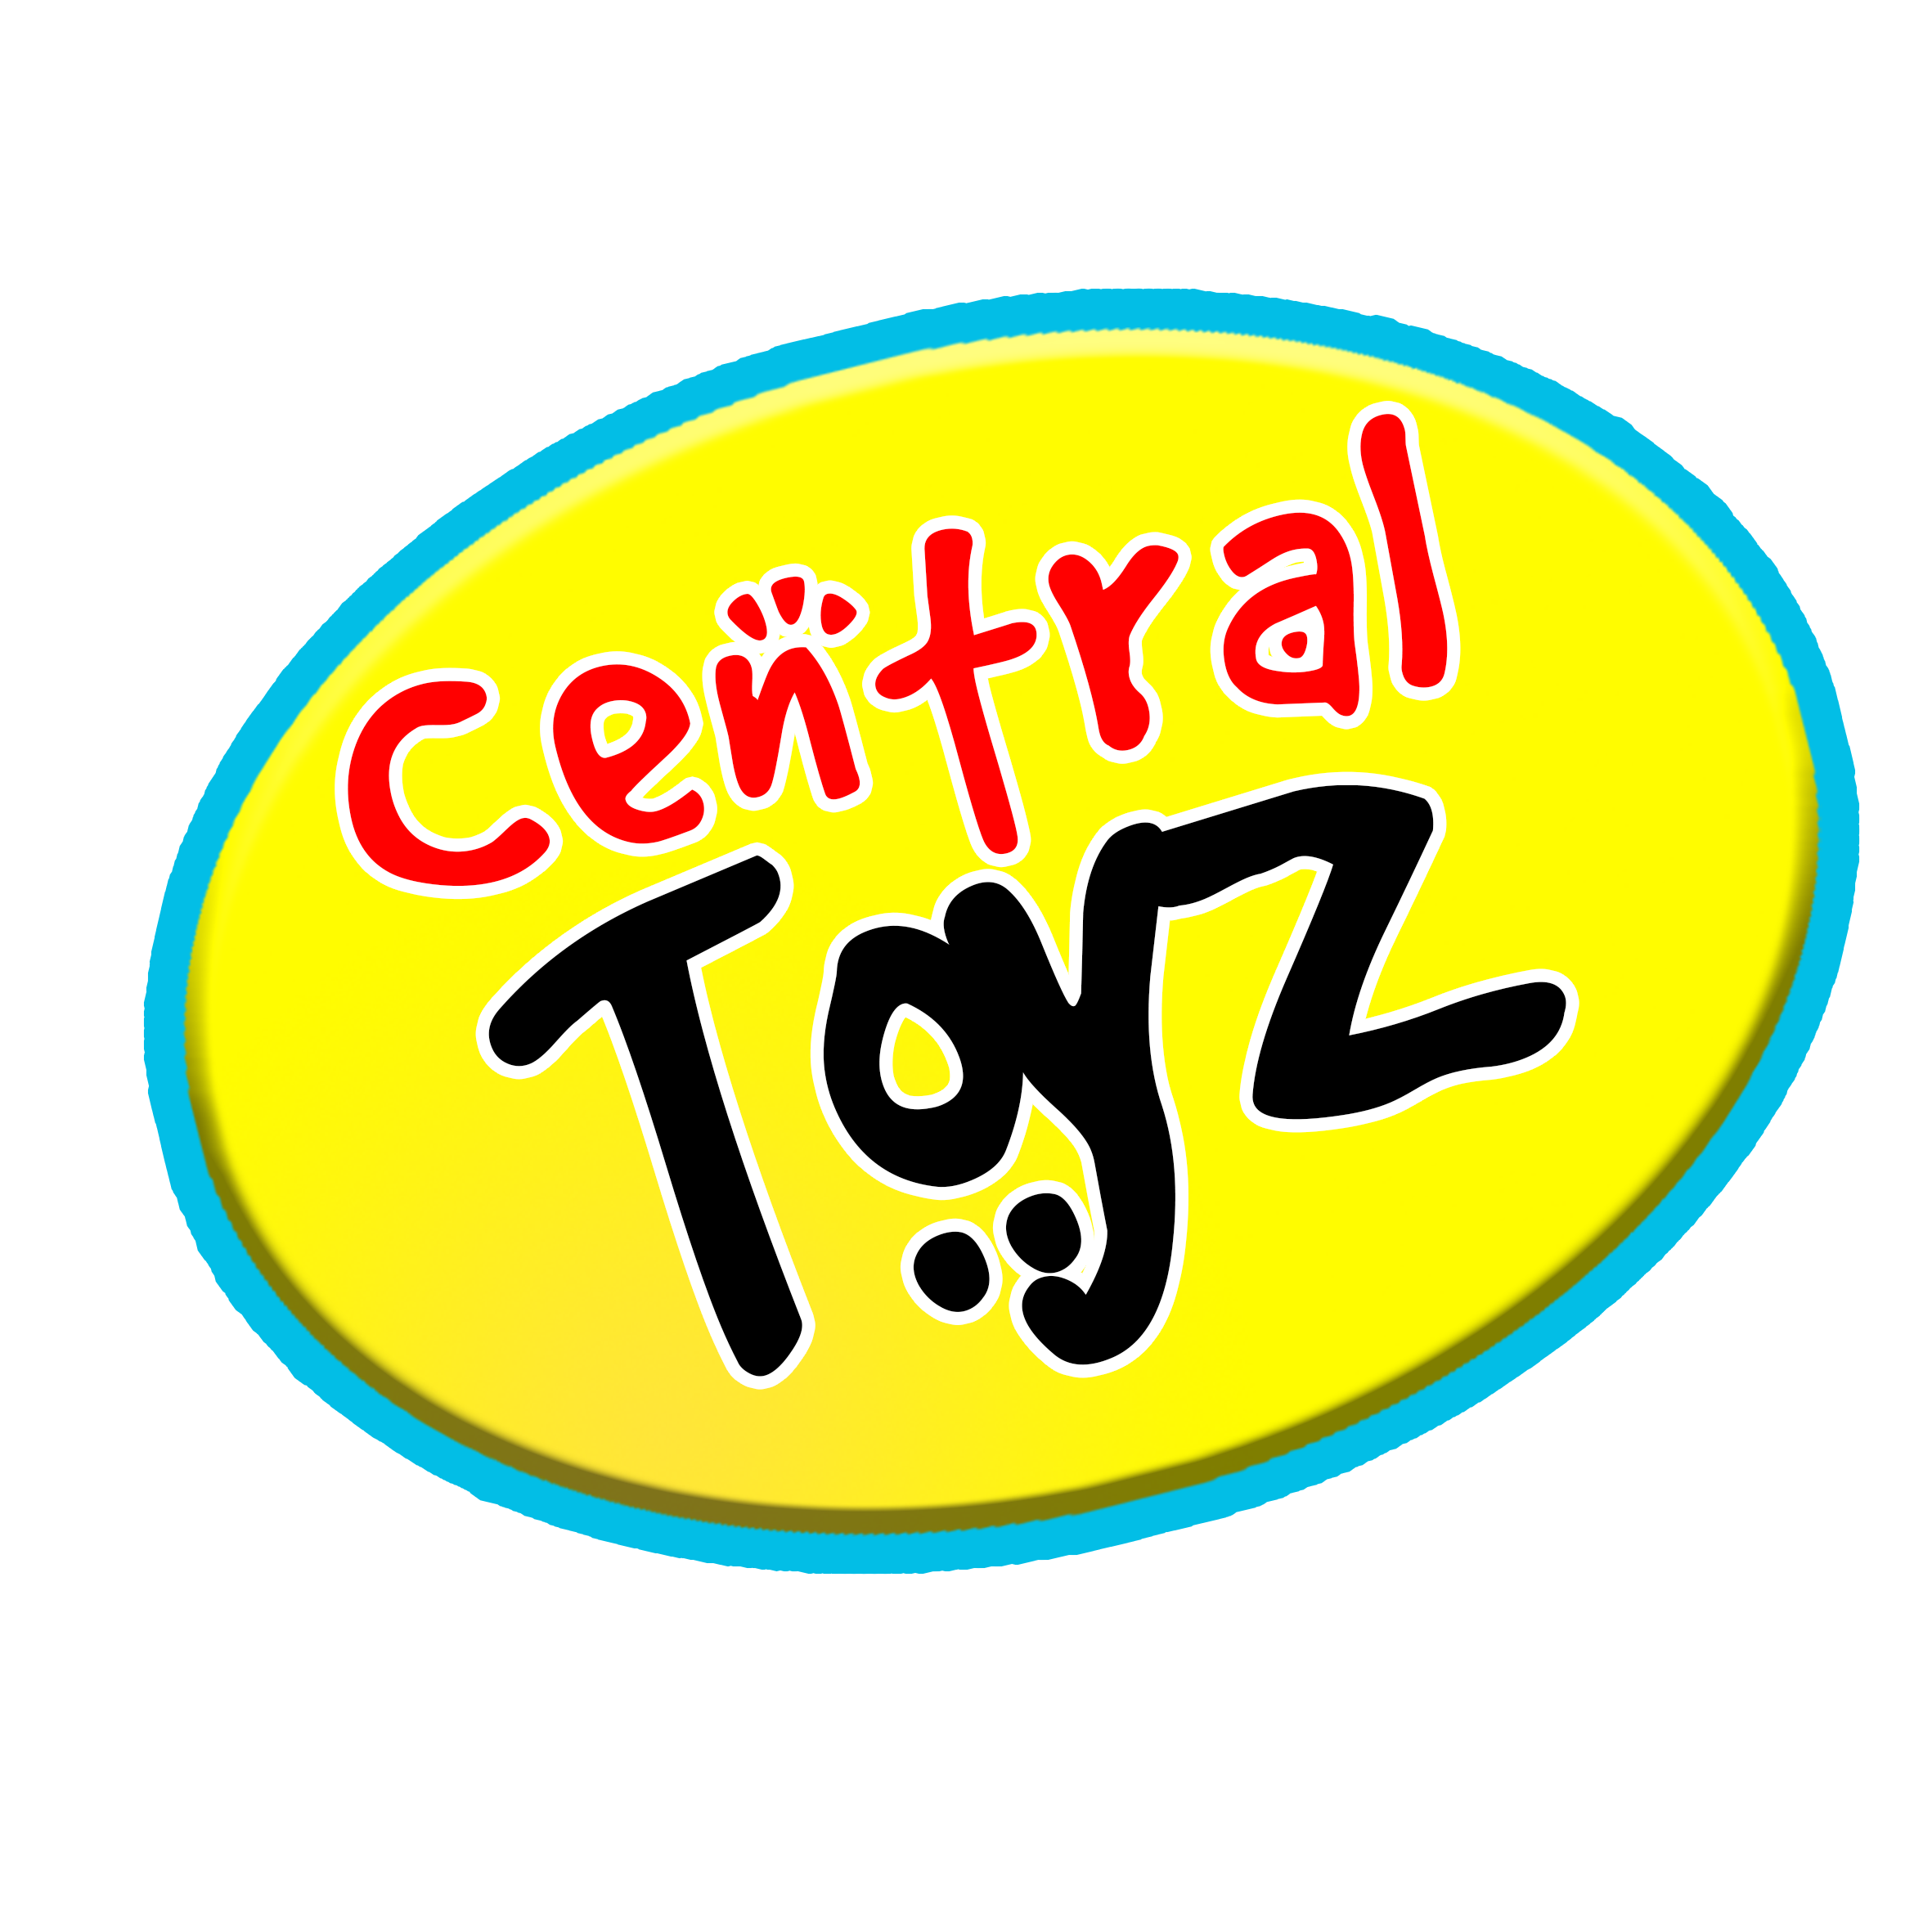 Central Toyz Logo